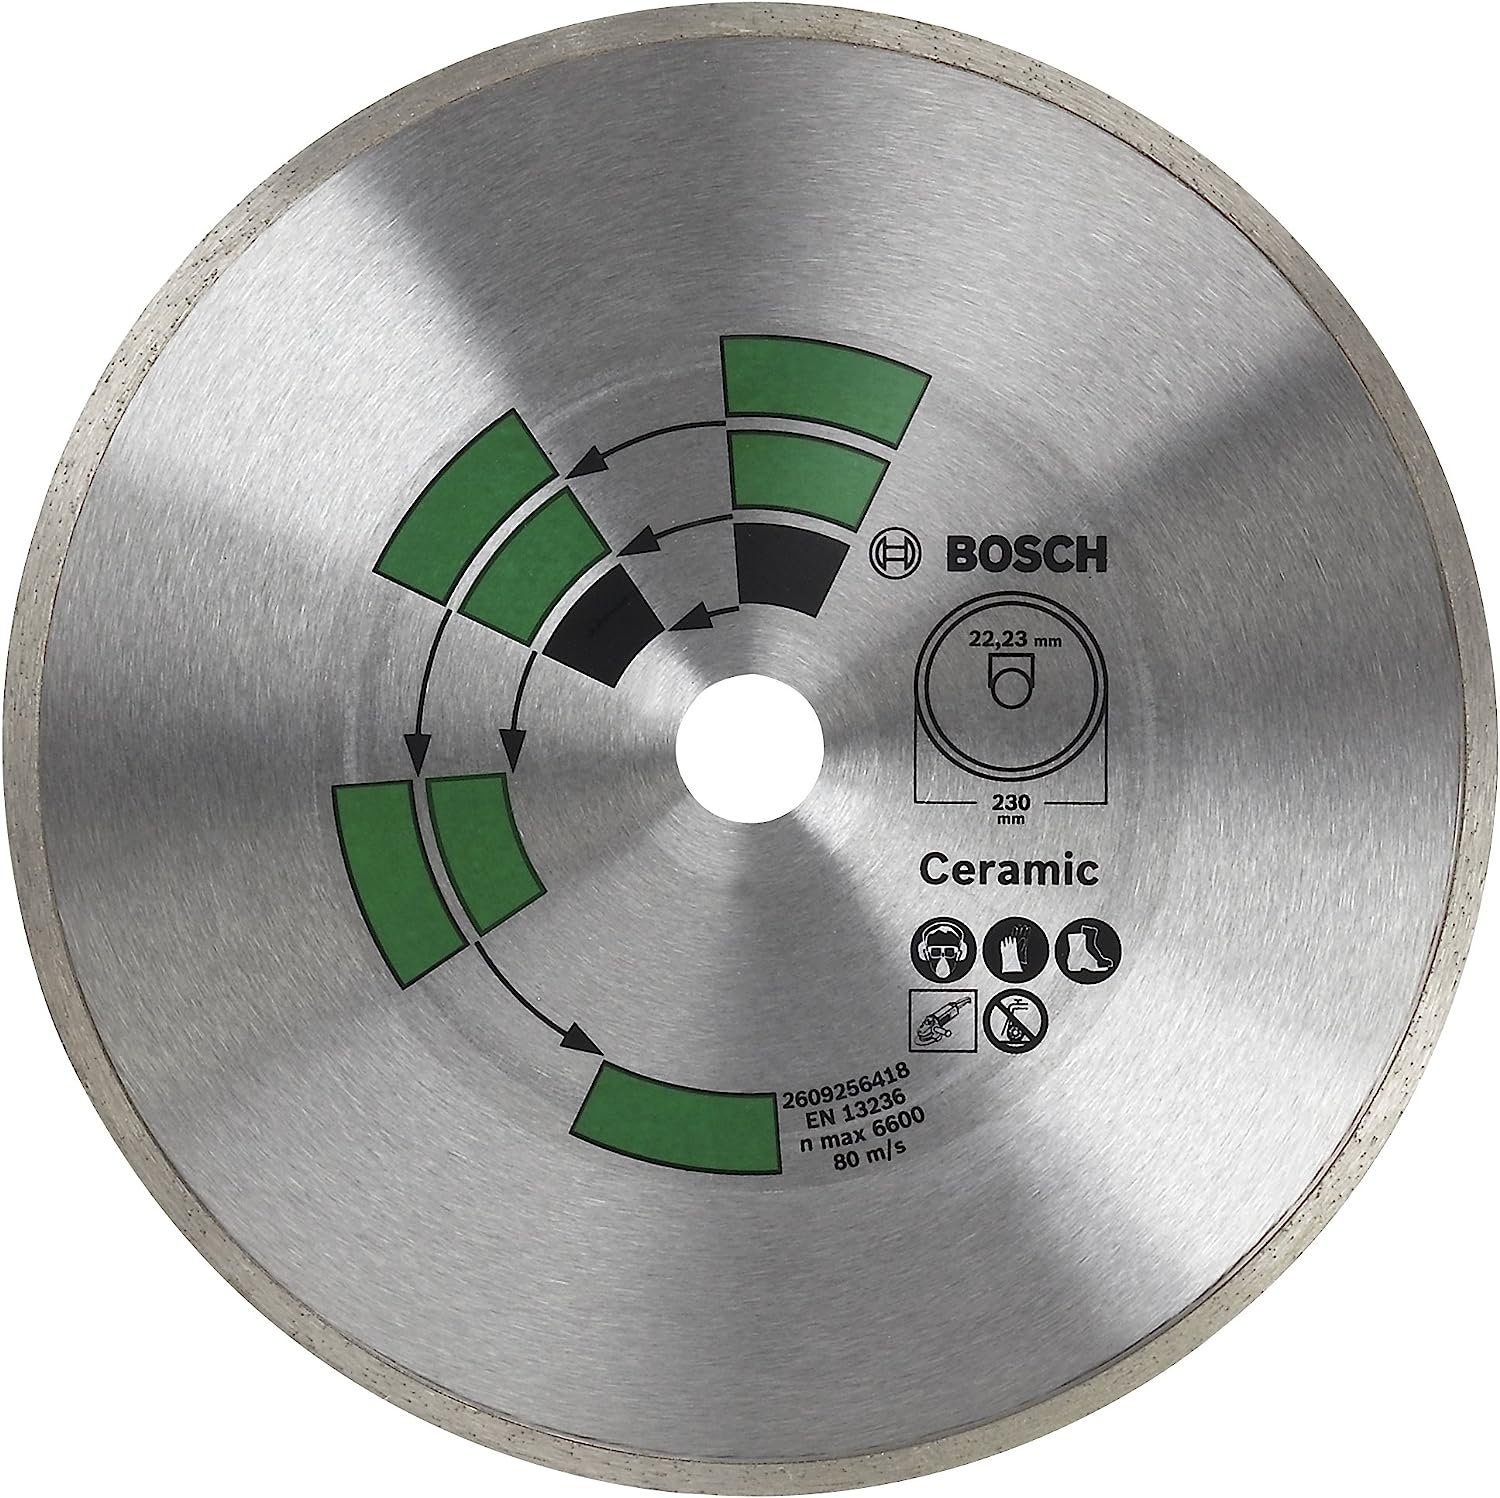 BOSCH Bohrfutter Bosch 125 Keramik, 2609256417 mm Top Diamanttrennscheibe Fliesen DIY